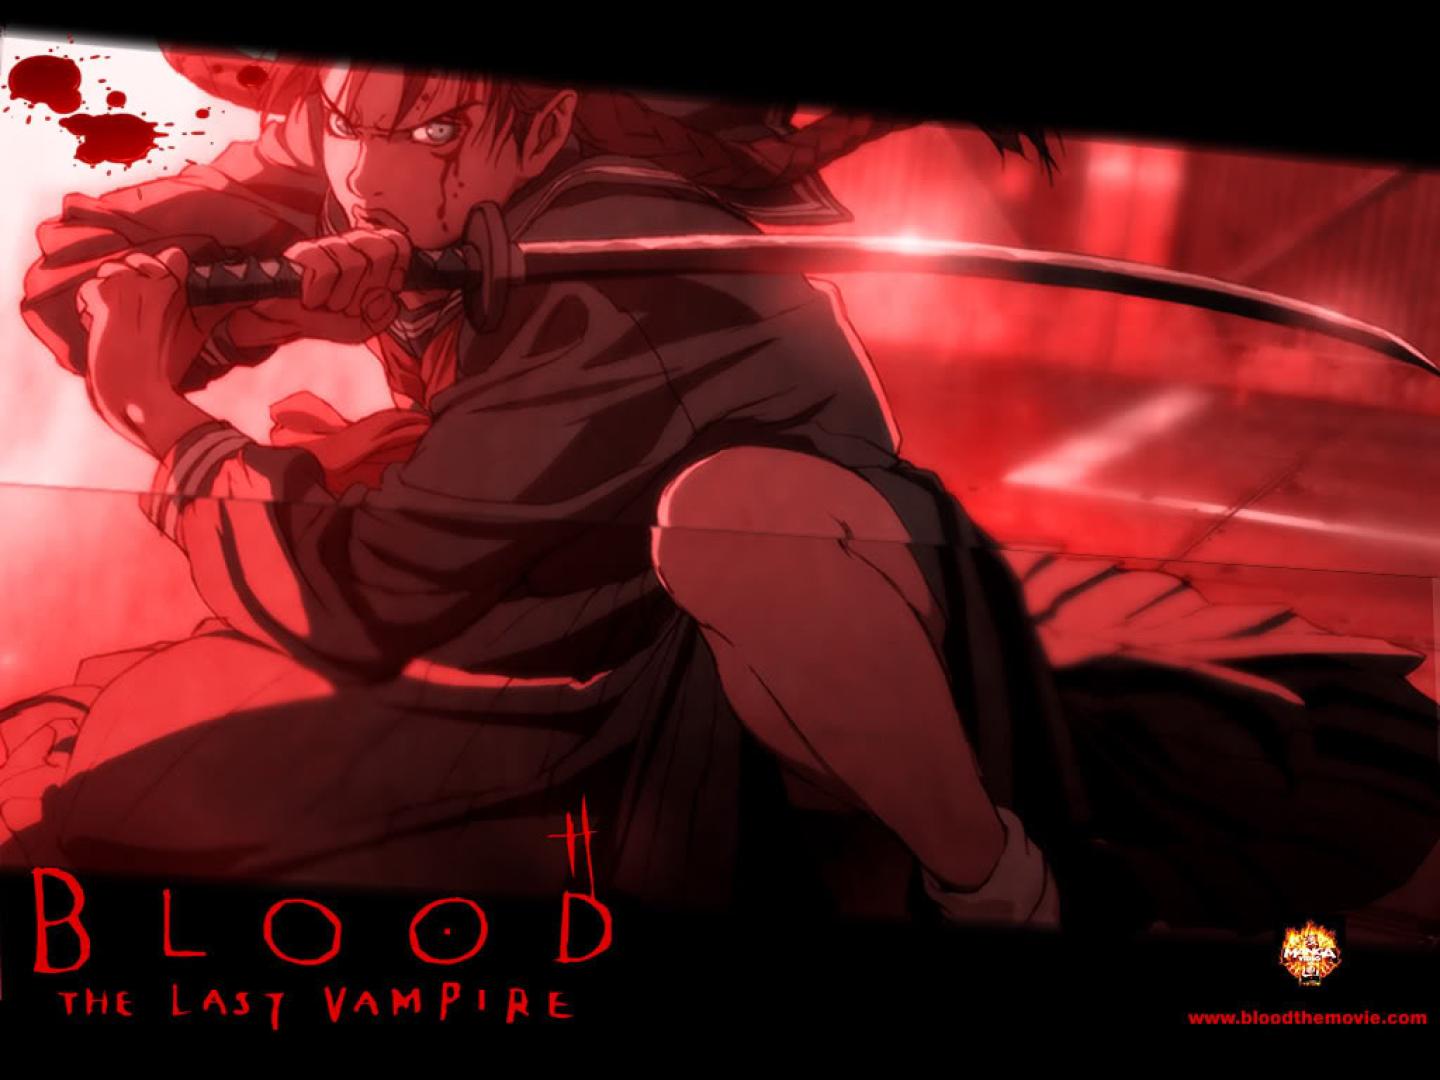 Blood: The Last Vampire - Vér: Az utolsó vámpír (2000/2009)